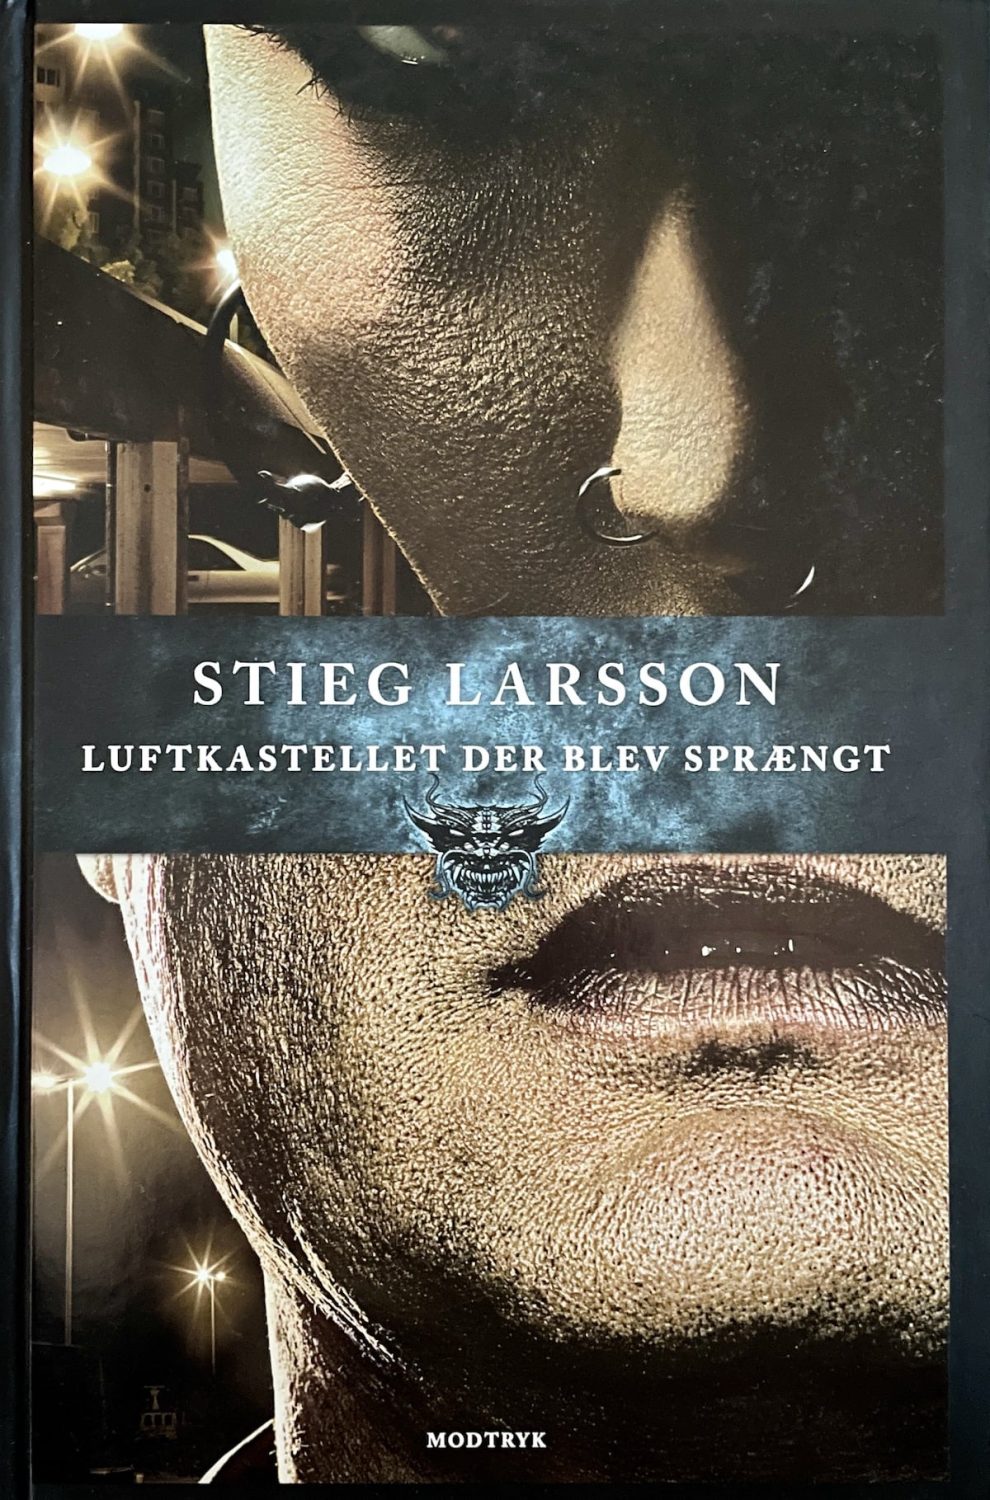 Luftkastellet der blev sprængt, Stieg Larsson, brugt bog